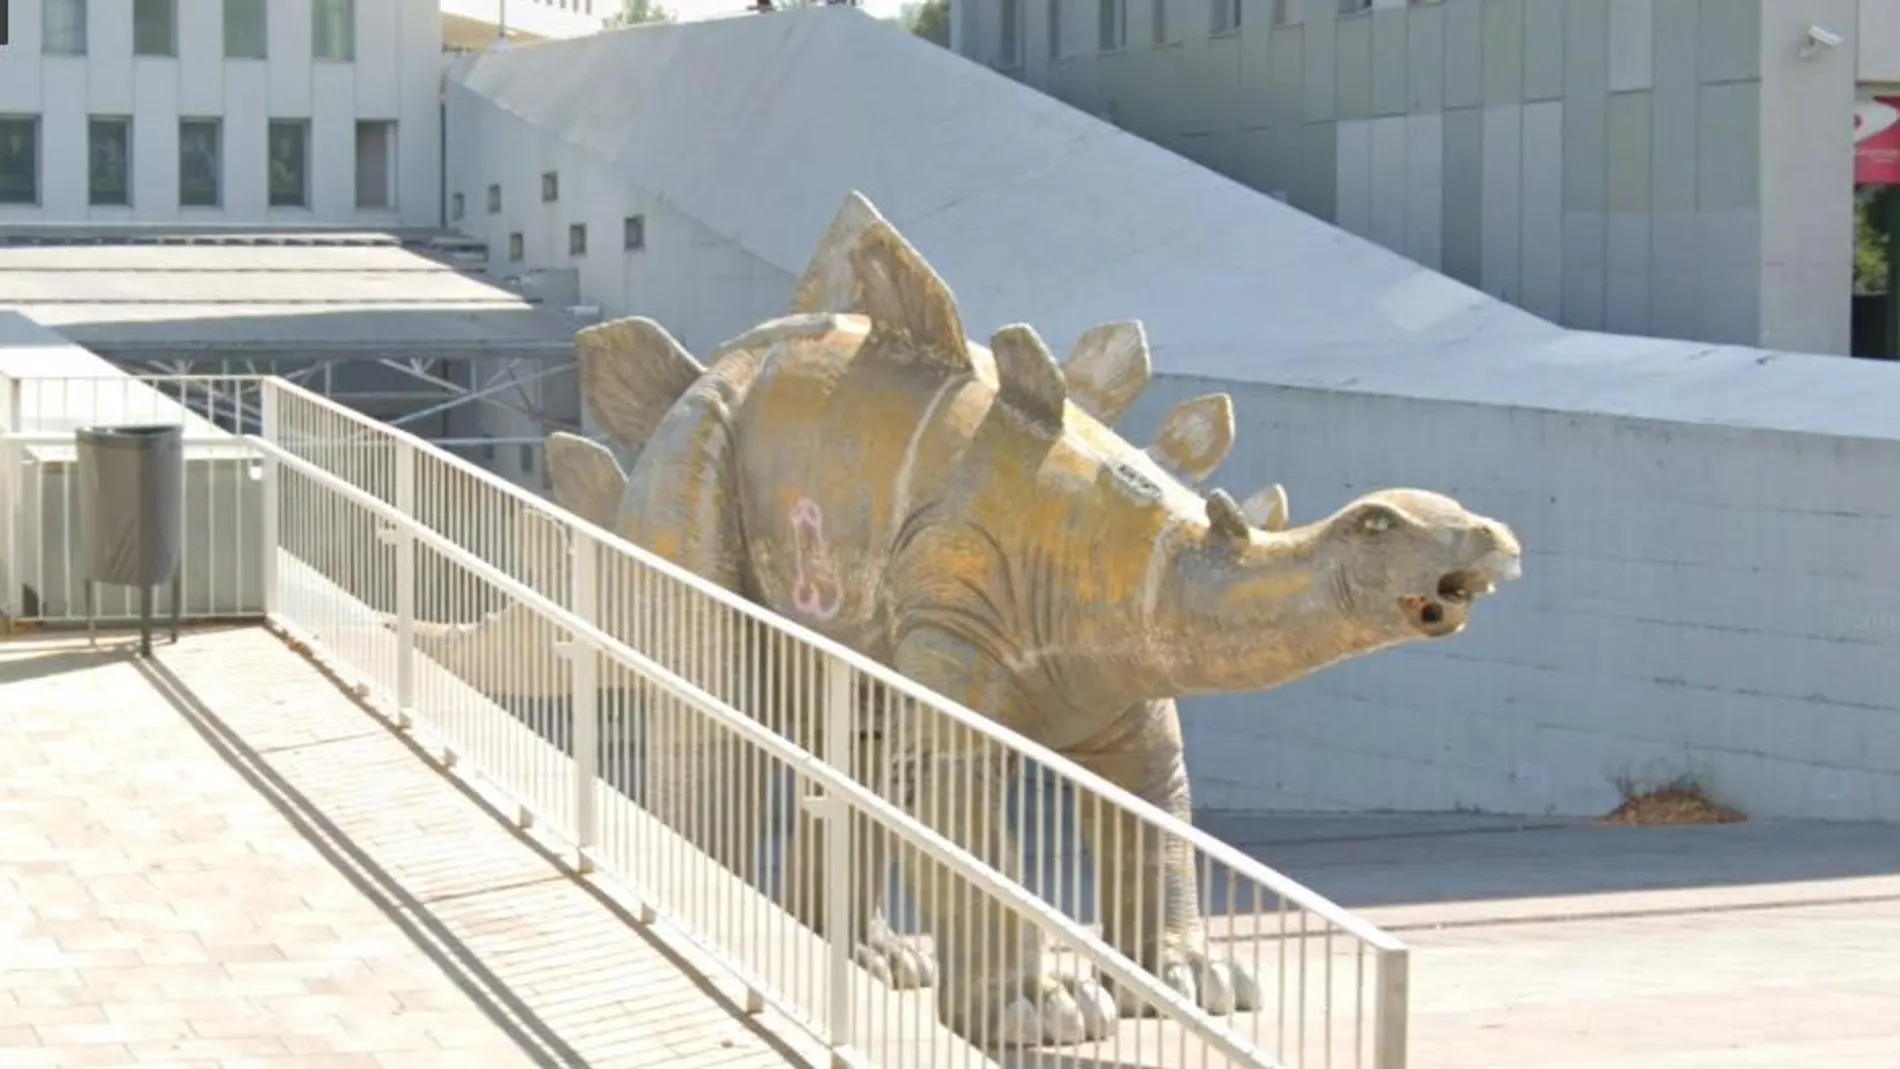 Imagen de la estatua de un estegosaurio en Santa Coloma, donde hallaron el cadáver de un hombre